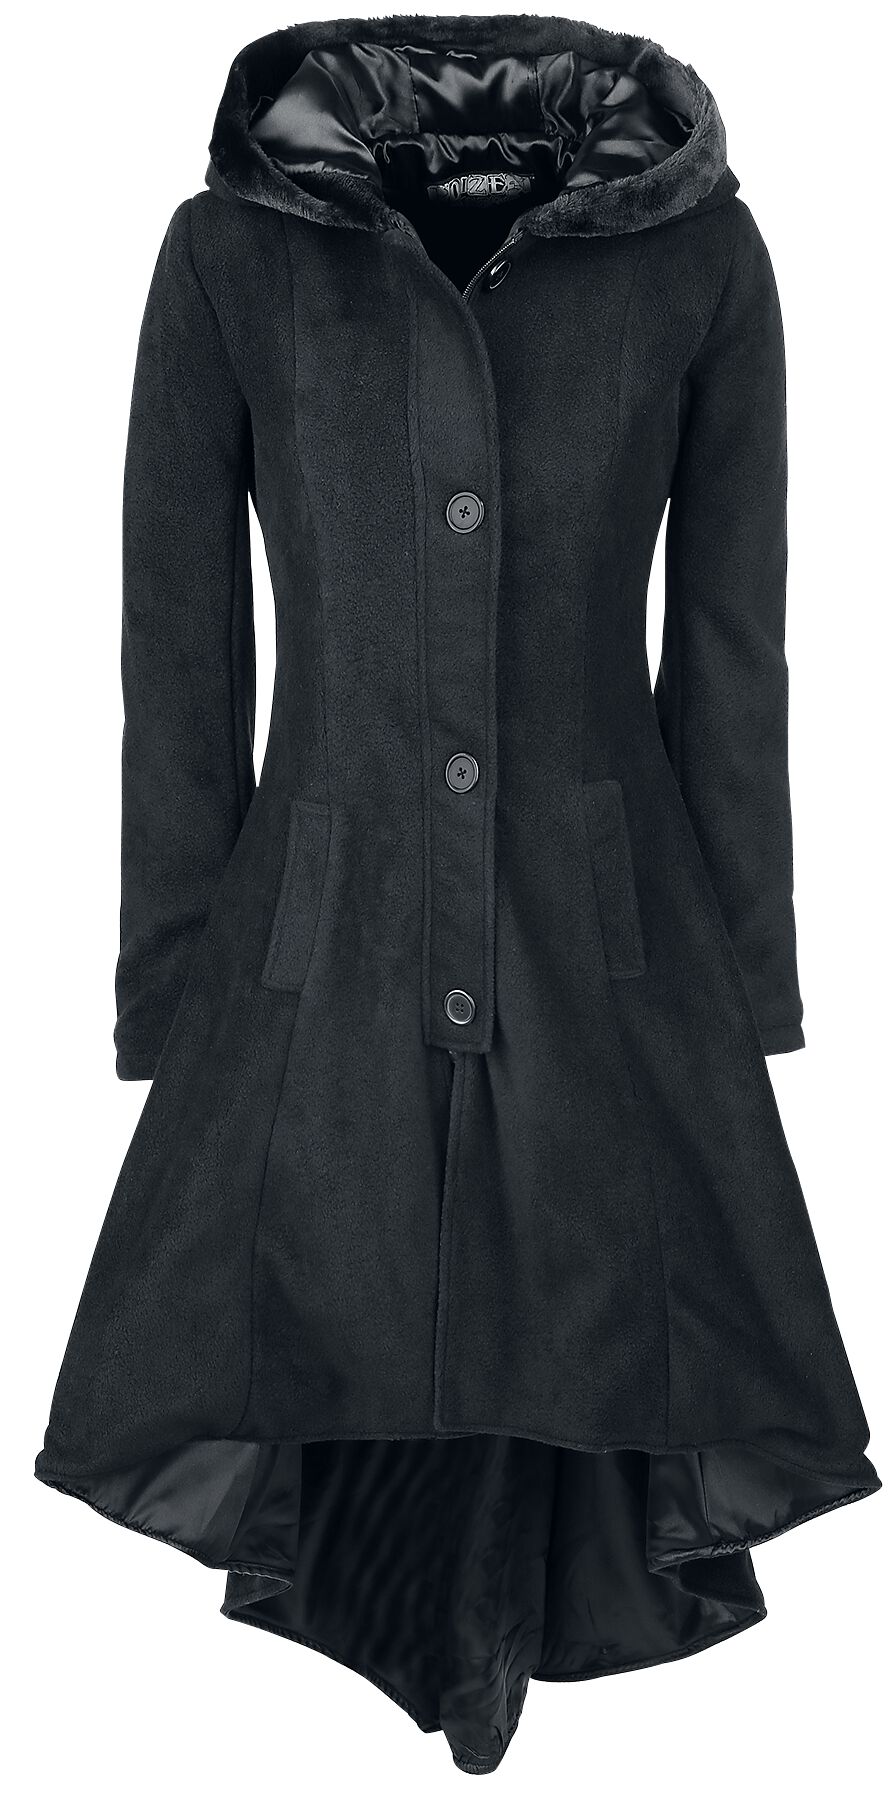 Poizen Industries Memorial Coat Wintermantel schwarz in XL